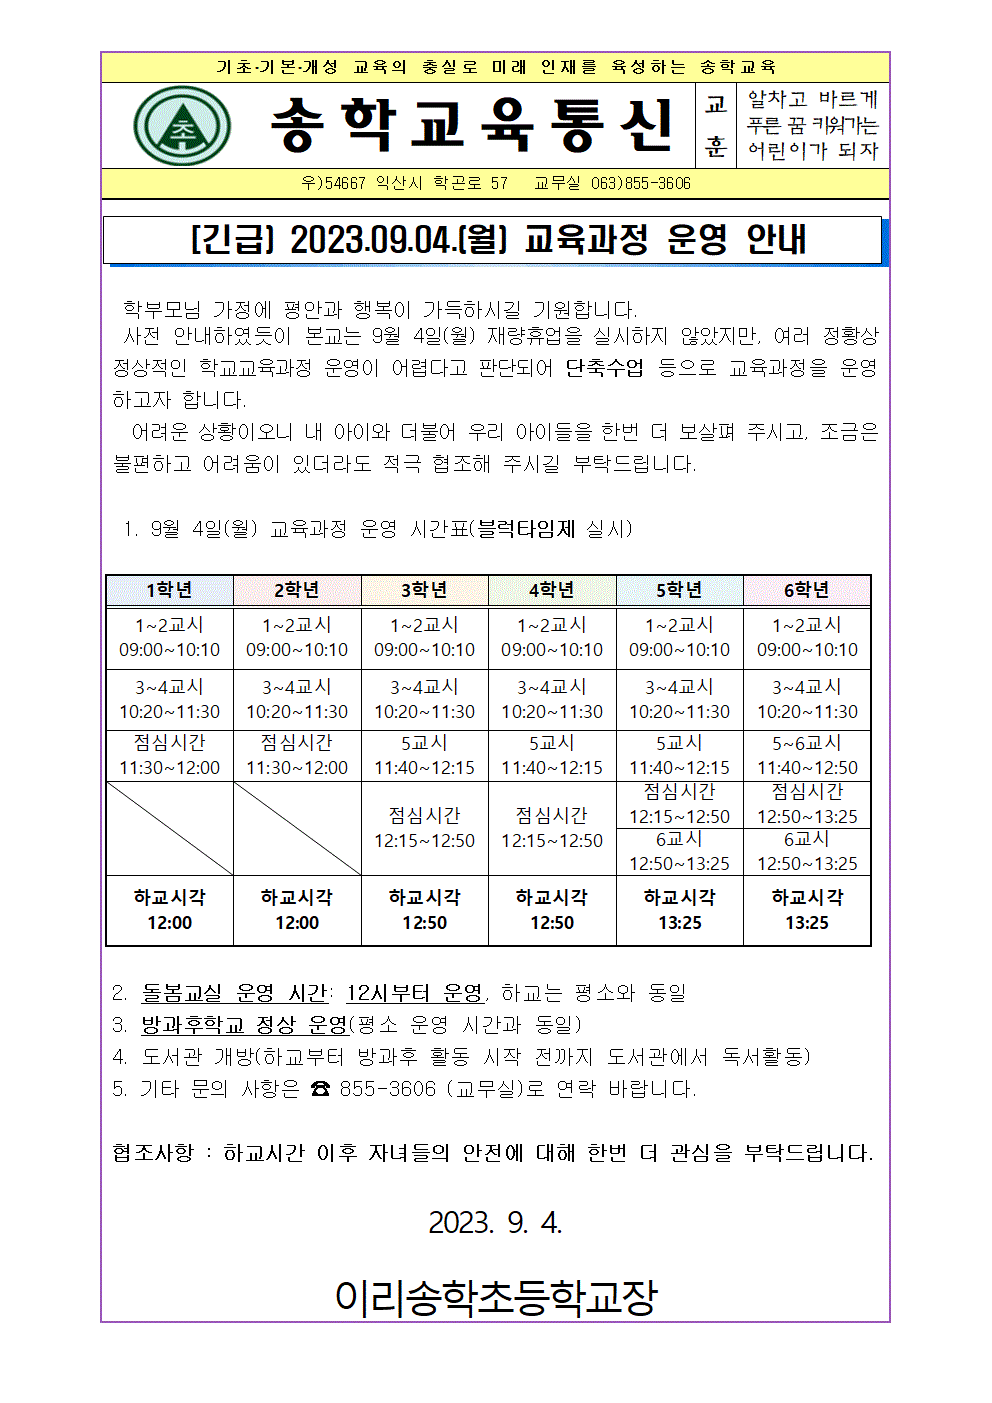 [긴급] 9.4. 교육과정 운영 안내 가정통신문001